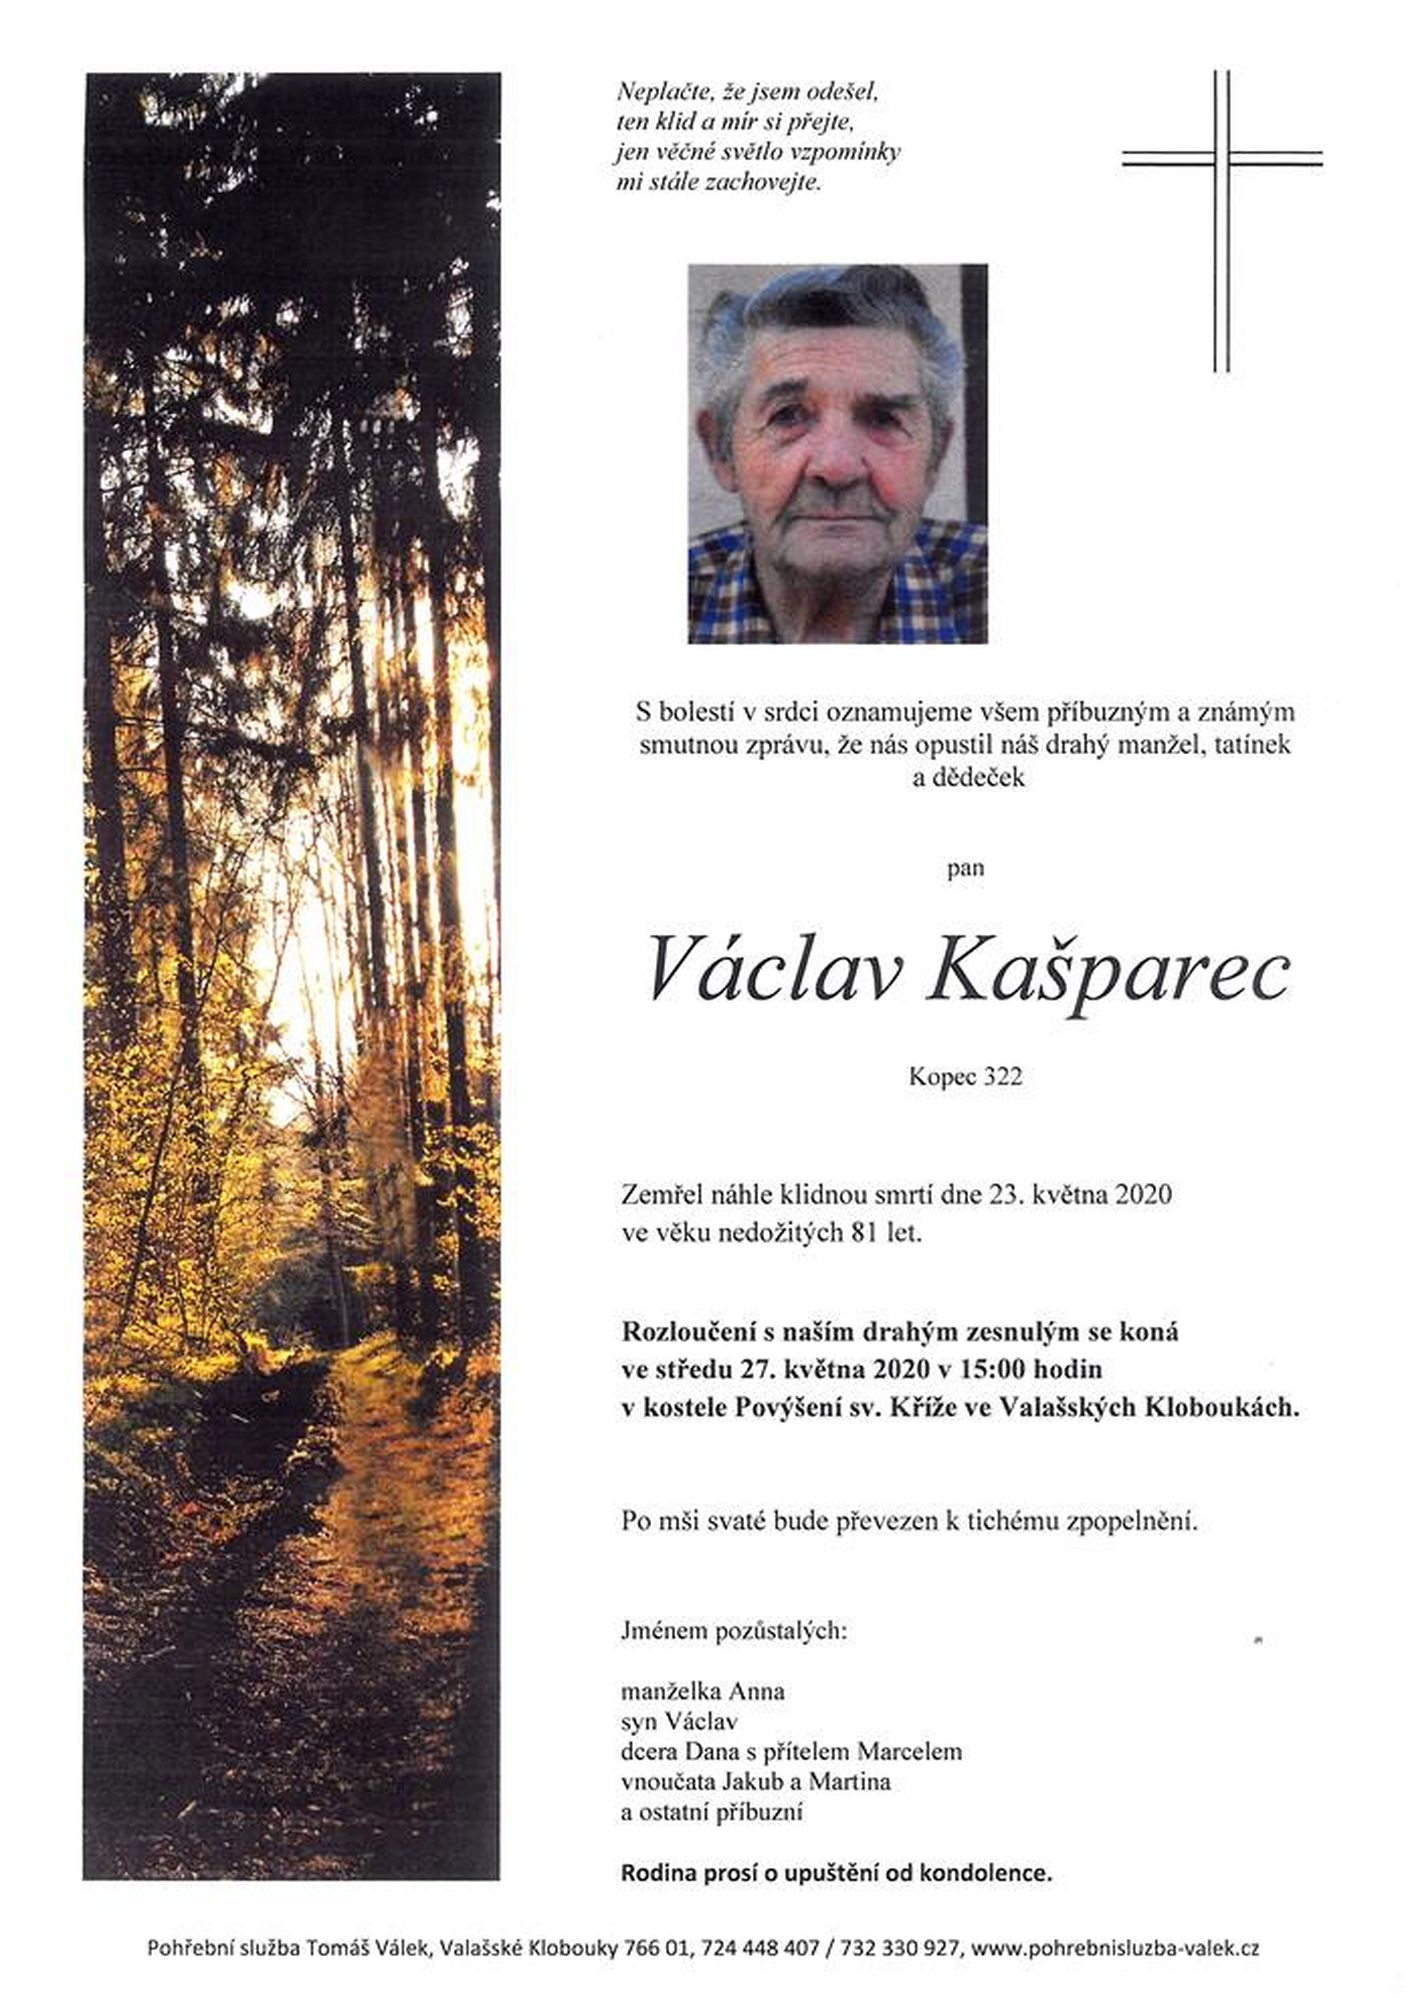 Václav Kašparec